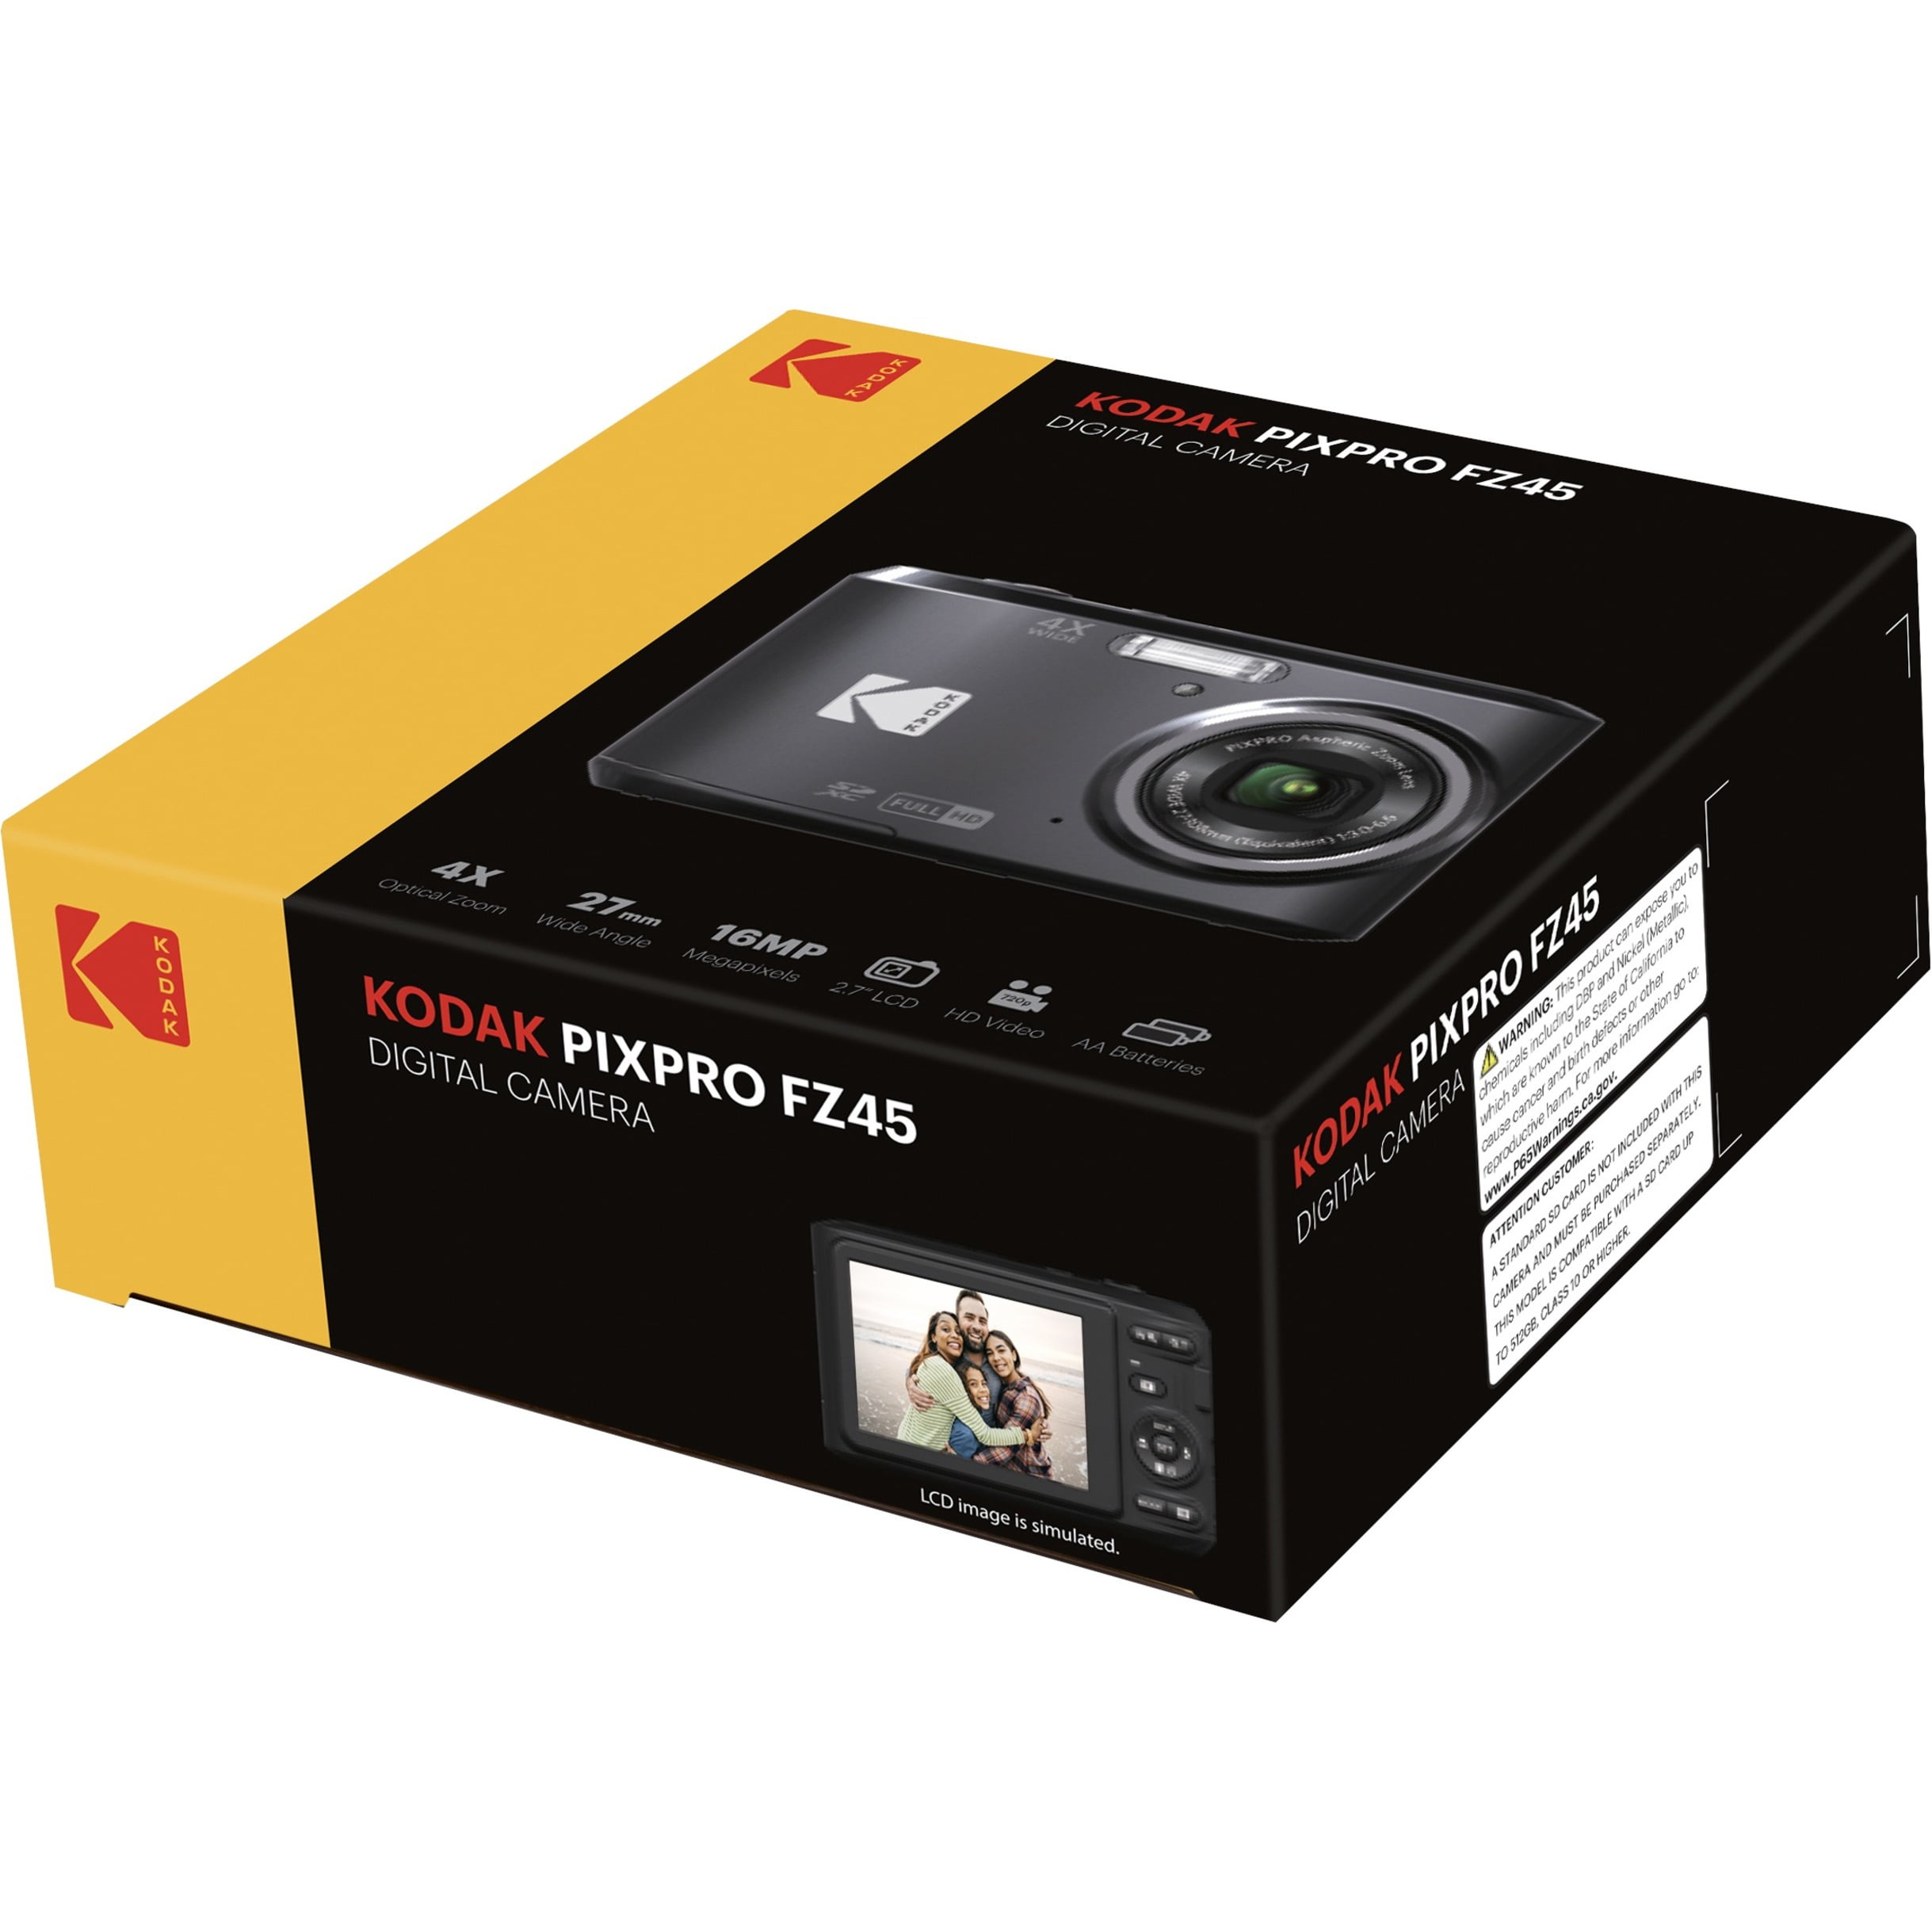 2023 Kodak Pixpro FZ45 Digital Camera Review + DIGICAM settings